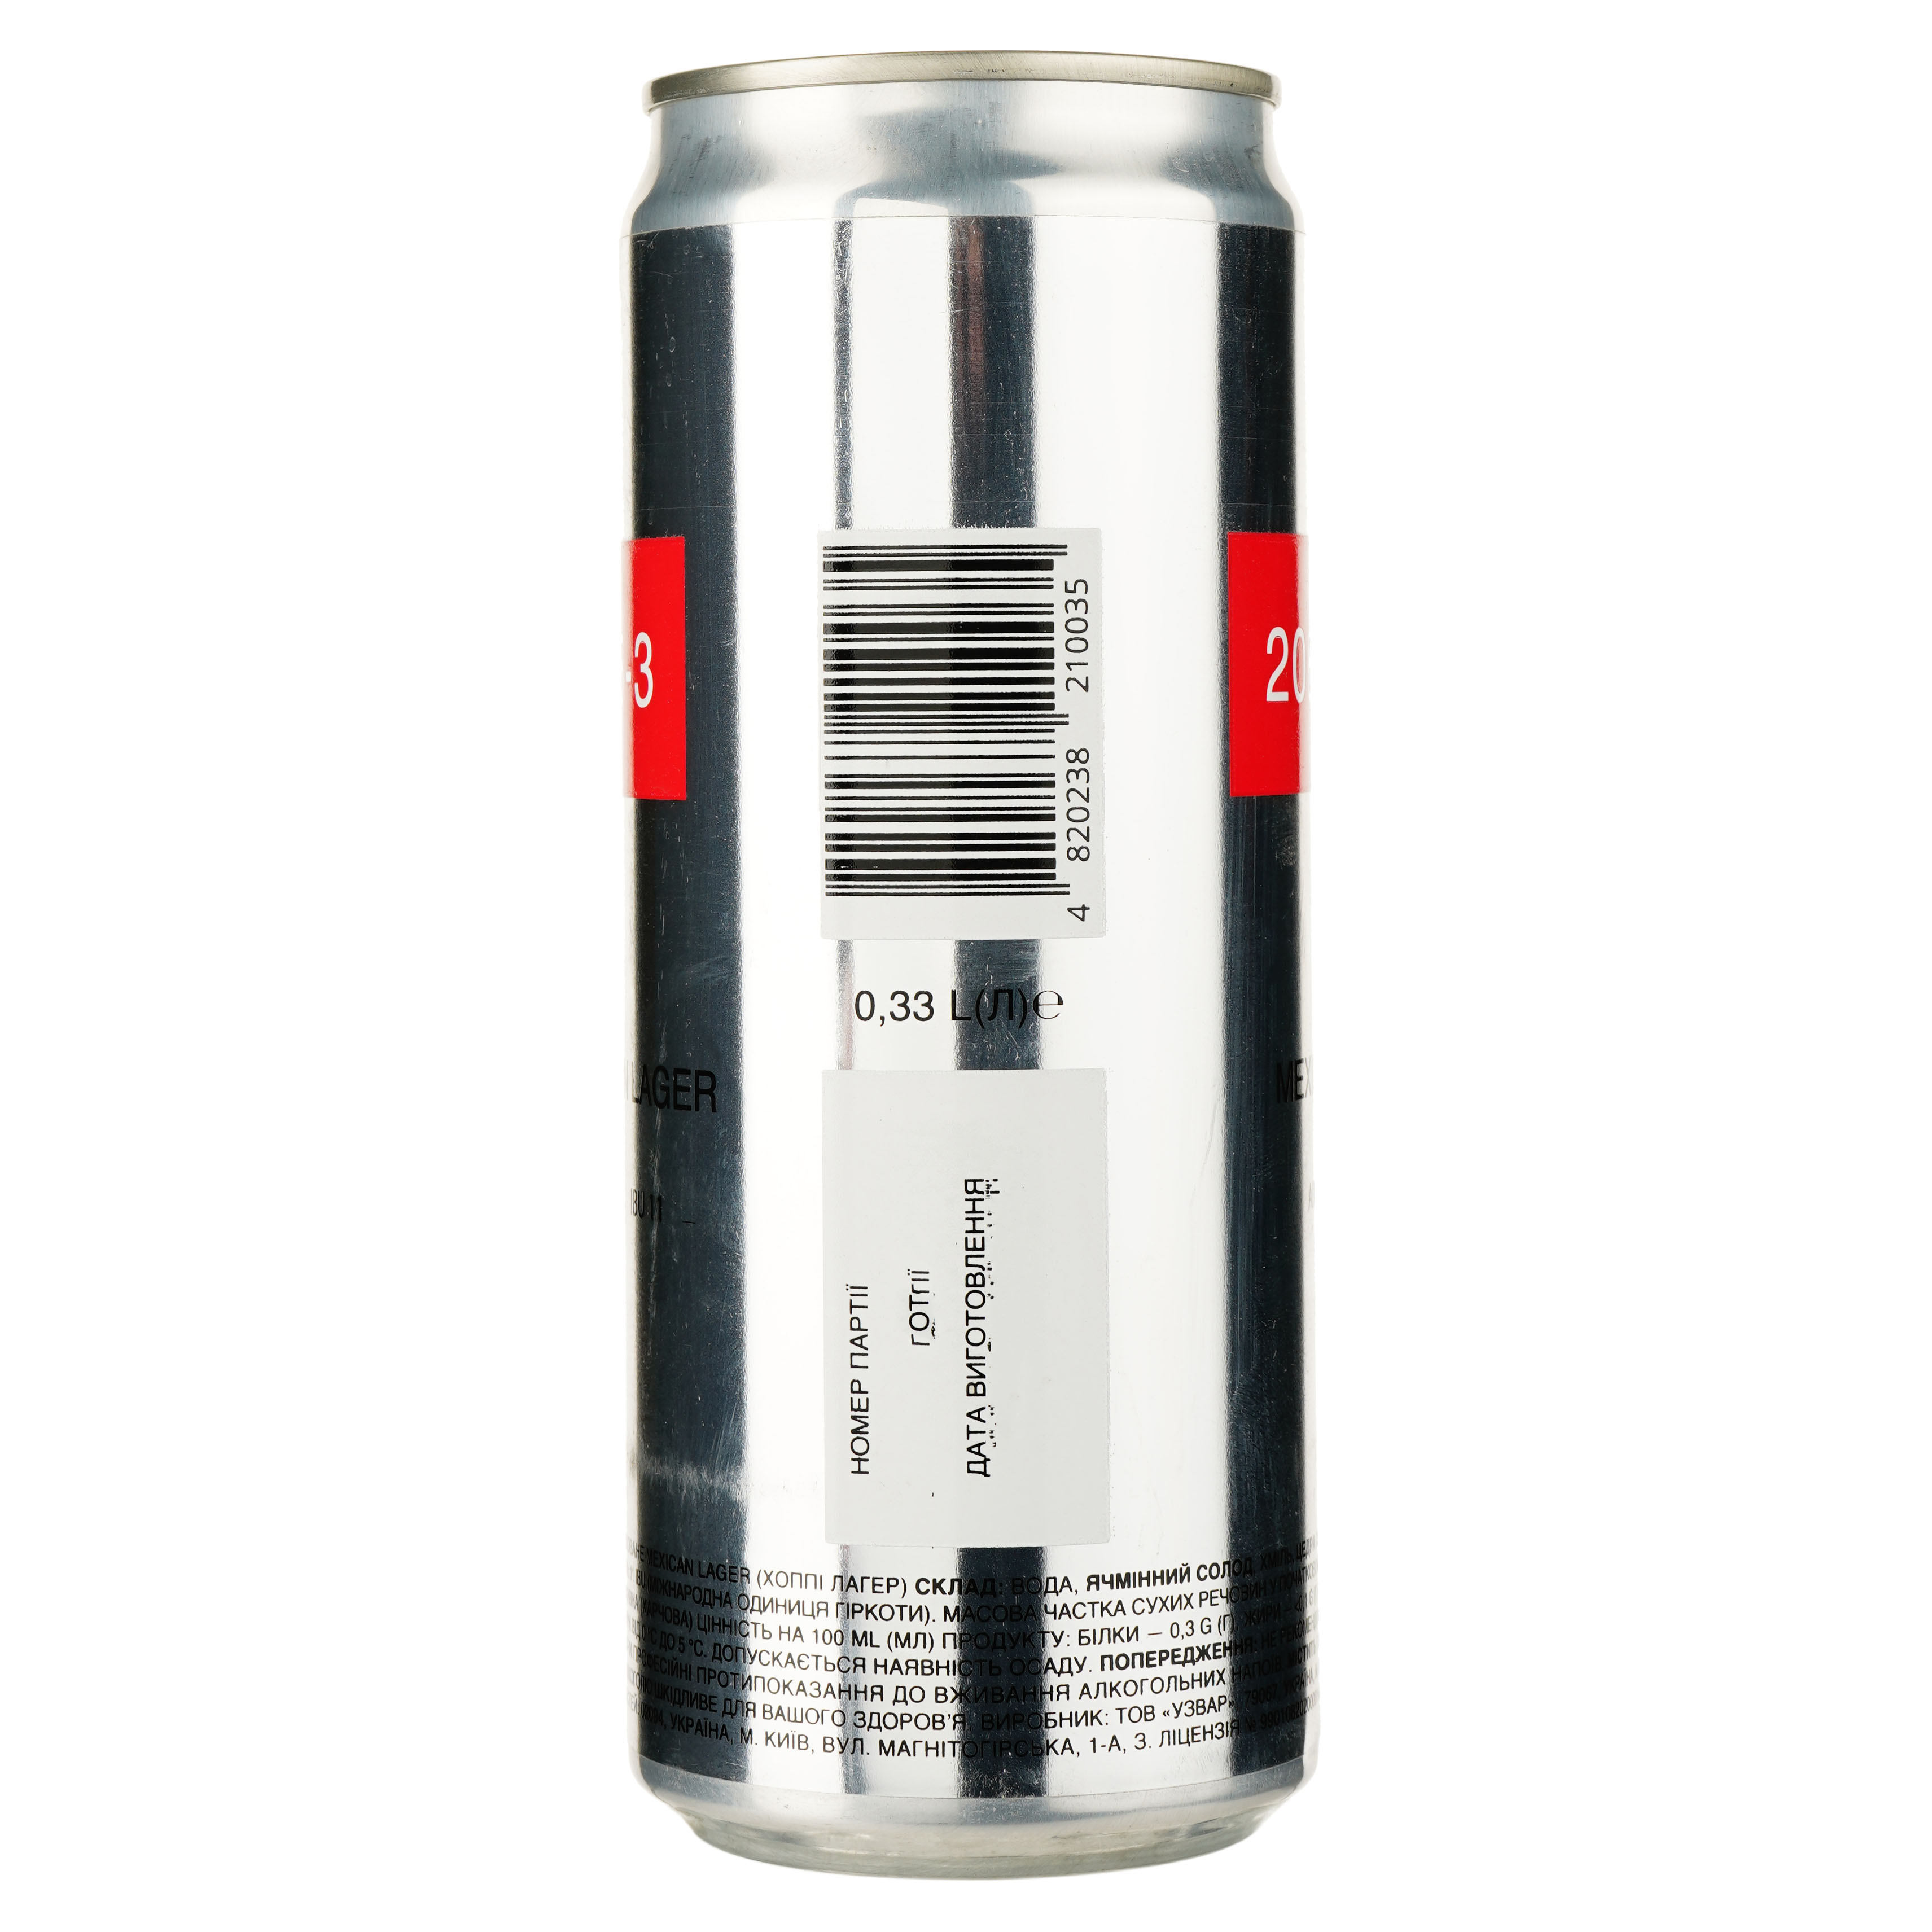 Пиво 2085-3 Hoppy Mexican Lager, светлое, нефильтрованное, 5,3%, ж/б, 0,33 л (842345) - фото 2